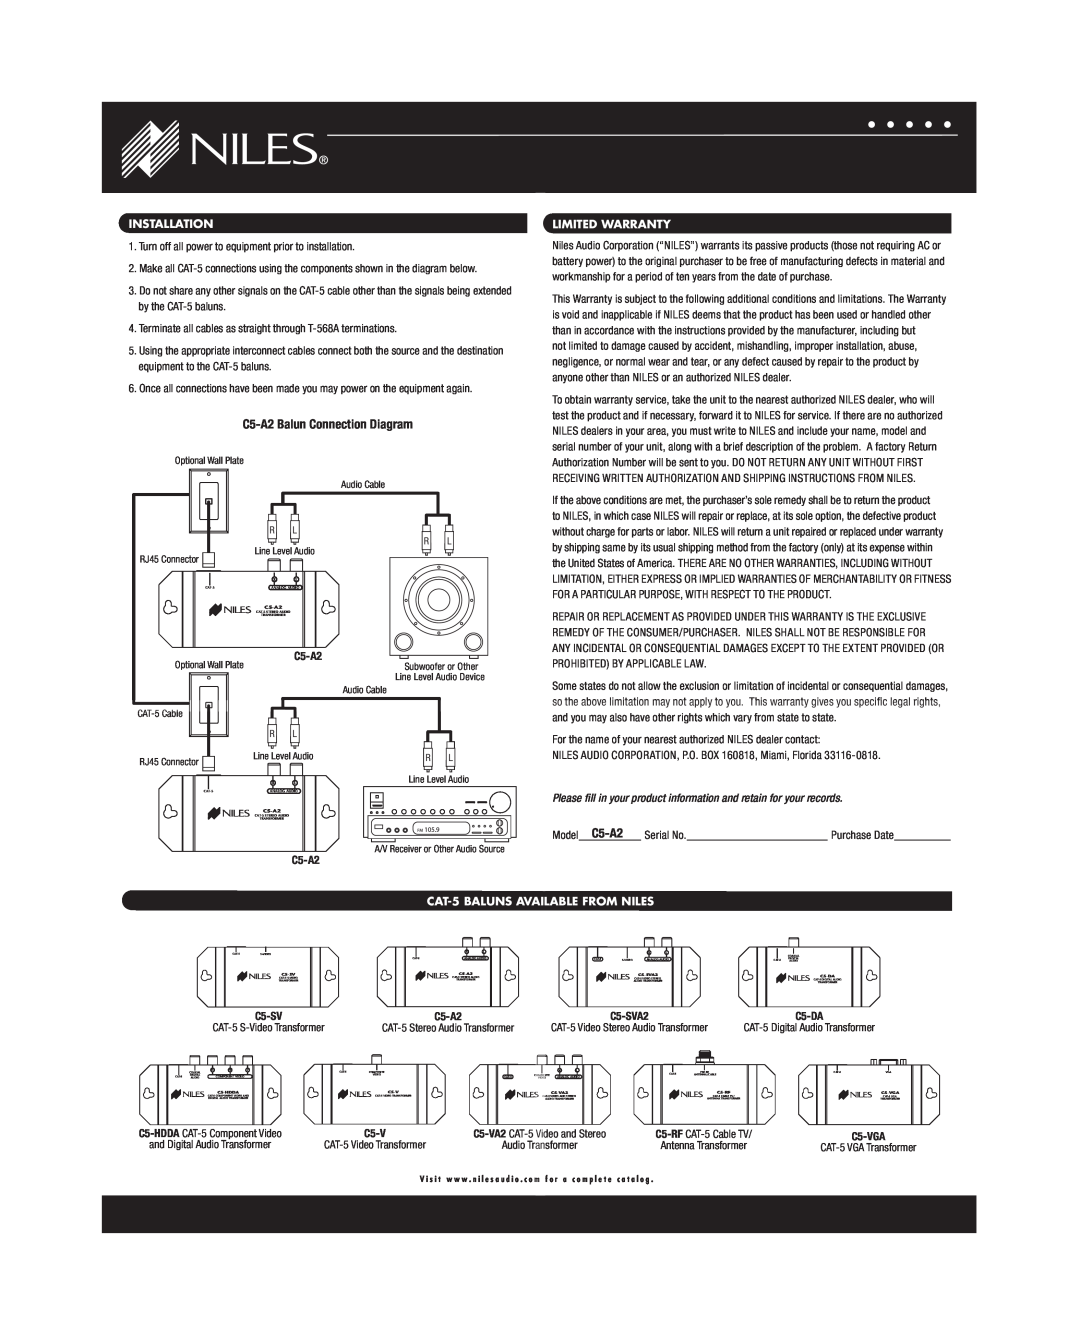 Niles Audio warranty Installation, C5-A2Balun Connection Diagram 